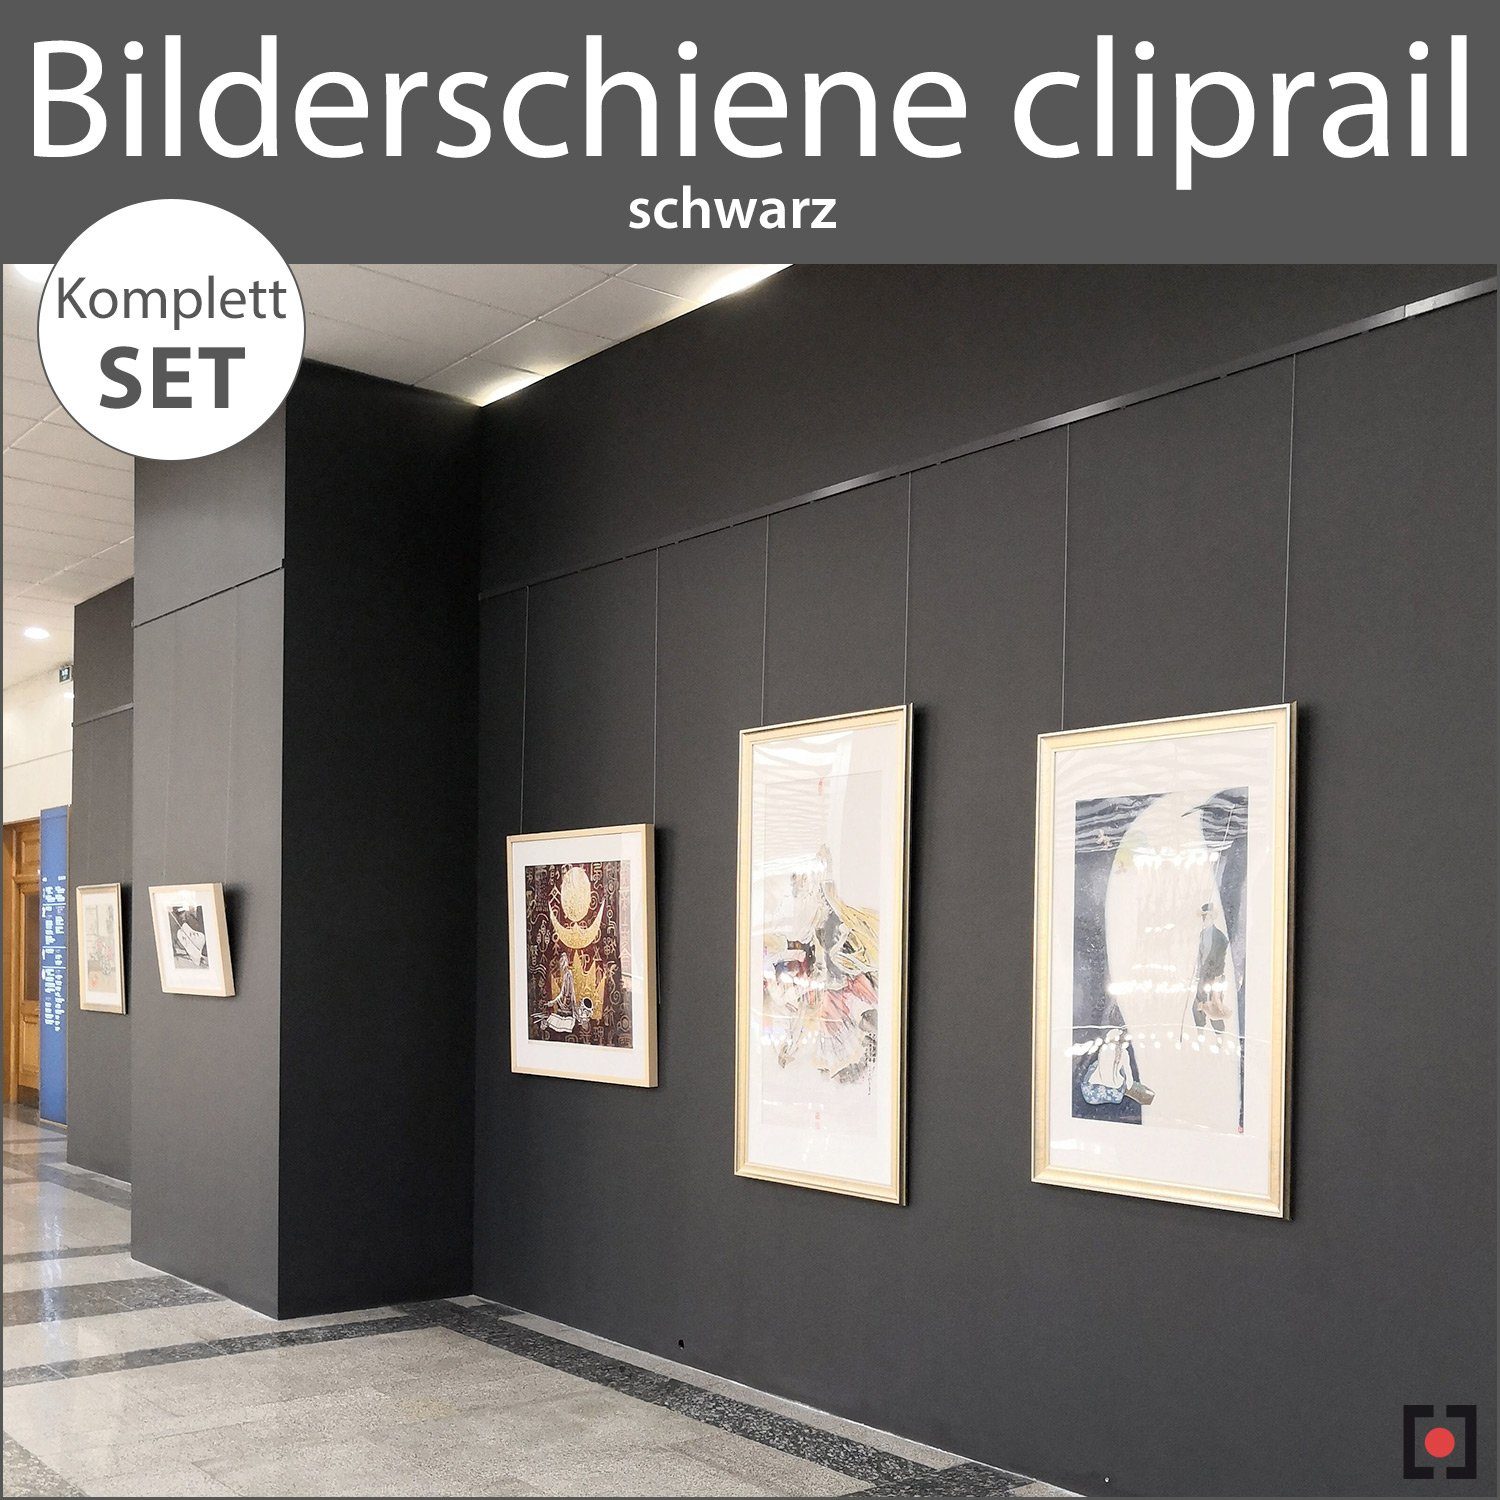 schwarz schwarz cliprail, STRÜSSMANN® Wandregal - Bilderschienen Wandschienen Komplett-Set